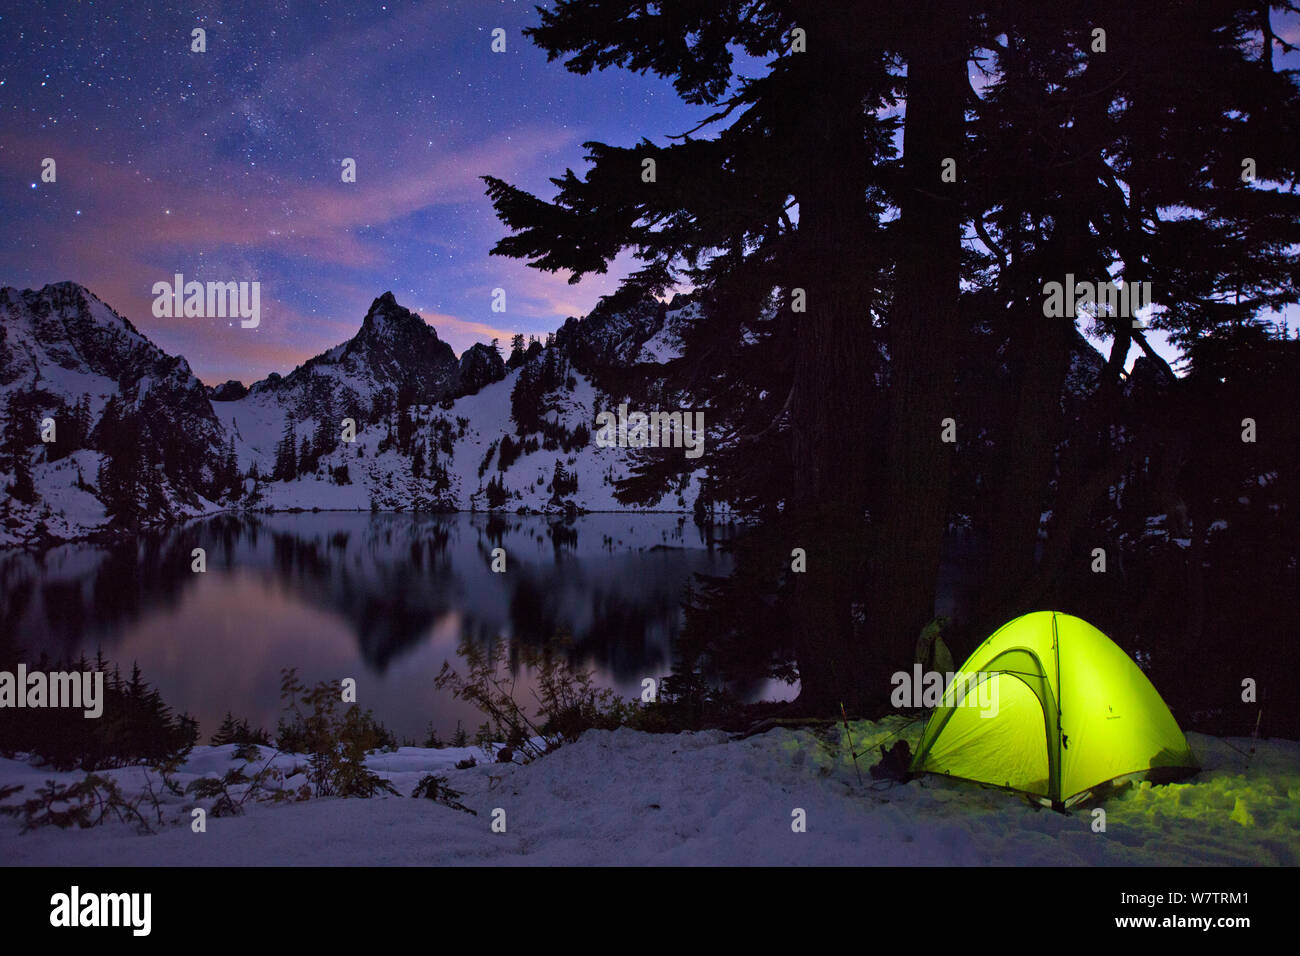 Tenda illuminata di notte dopo un inizio di nevicate invernali, con picco Kaleetan e Gem Lago, Vicino Snoqualmie Pass, Cascades, in Washington, Stati Uniti d'America, ottobre 2013. Foto Stock